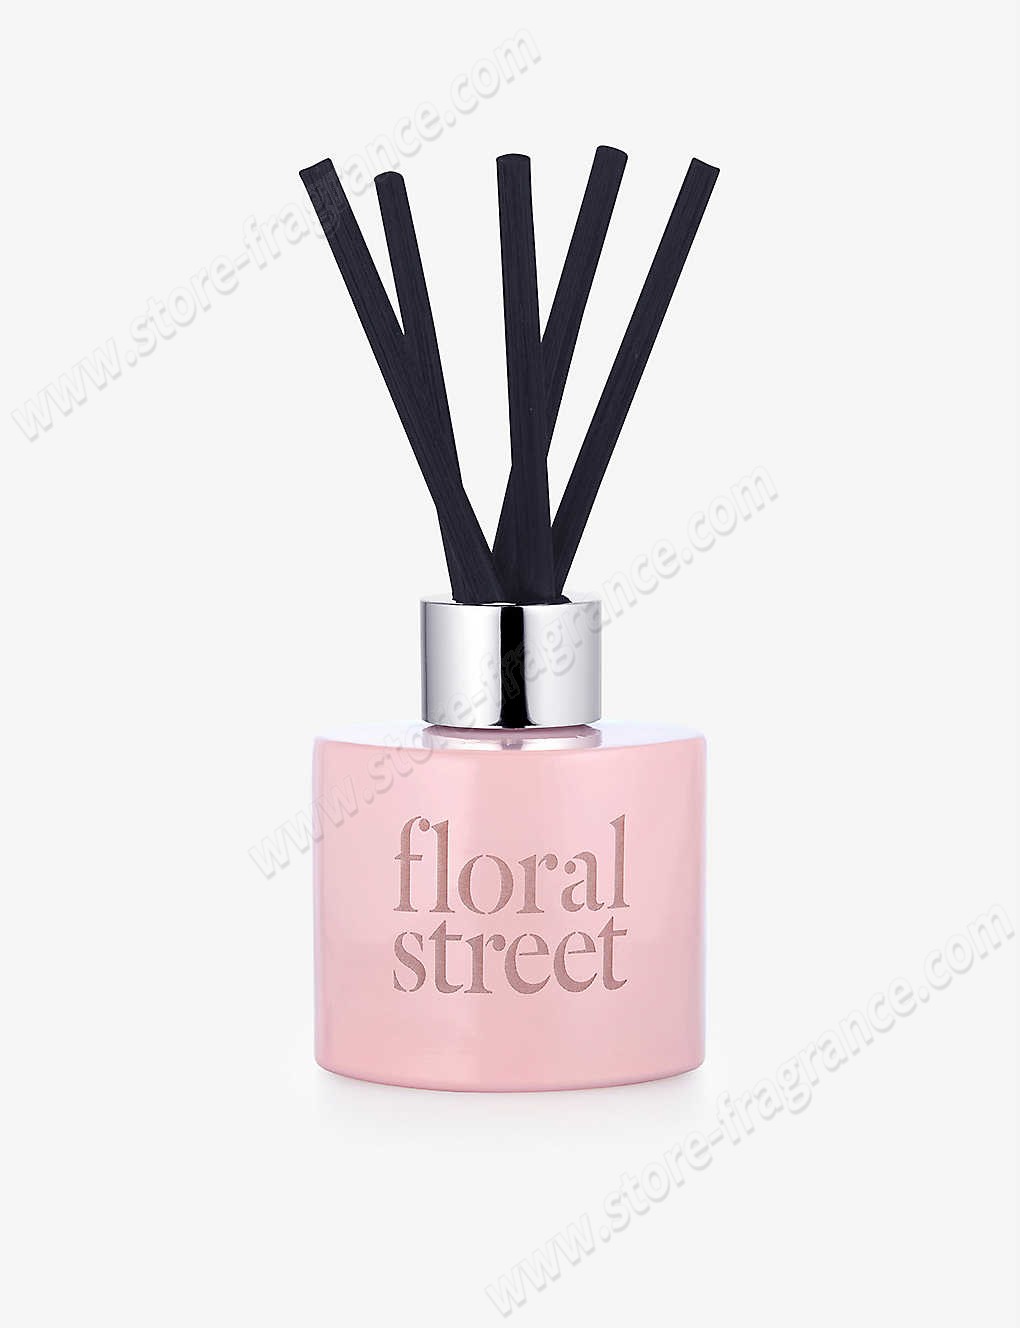 FLORAL STREET/Wonderland Bloom diffuser 100ml Limit Offer - FLORAL STREET/Wonderland Bloom diffuser 100ml Limit Offer